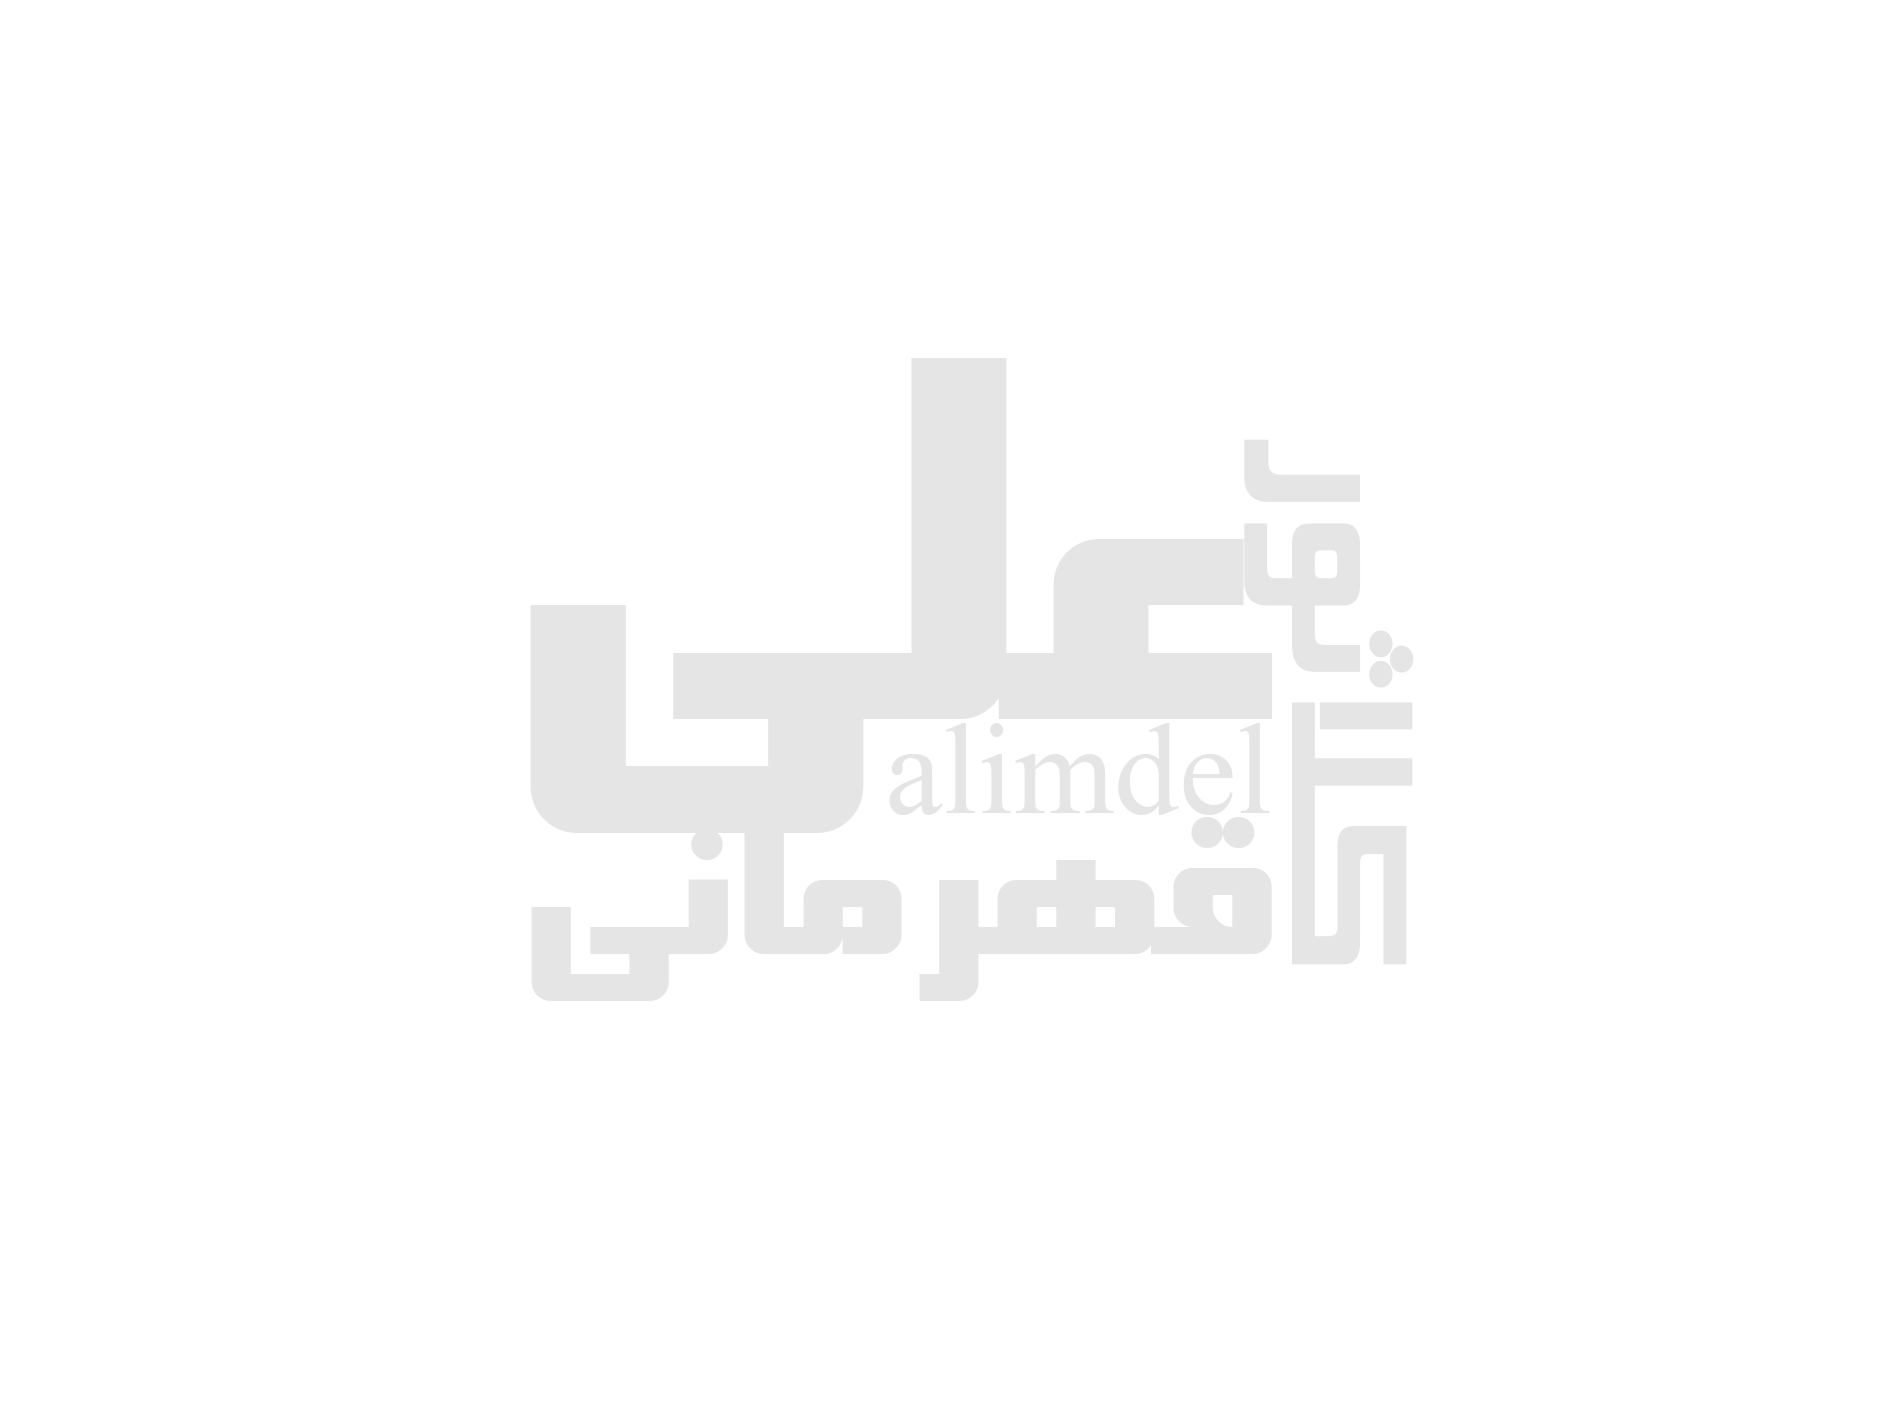 ارزان ترین مرجع تخصصی گرافیک ایرانی